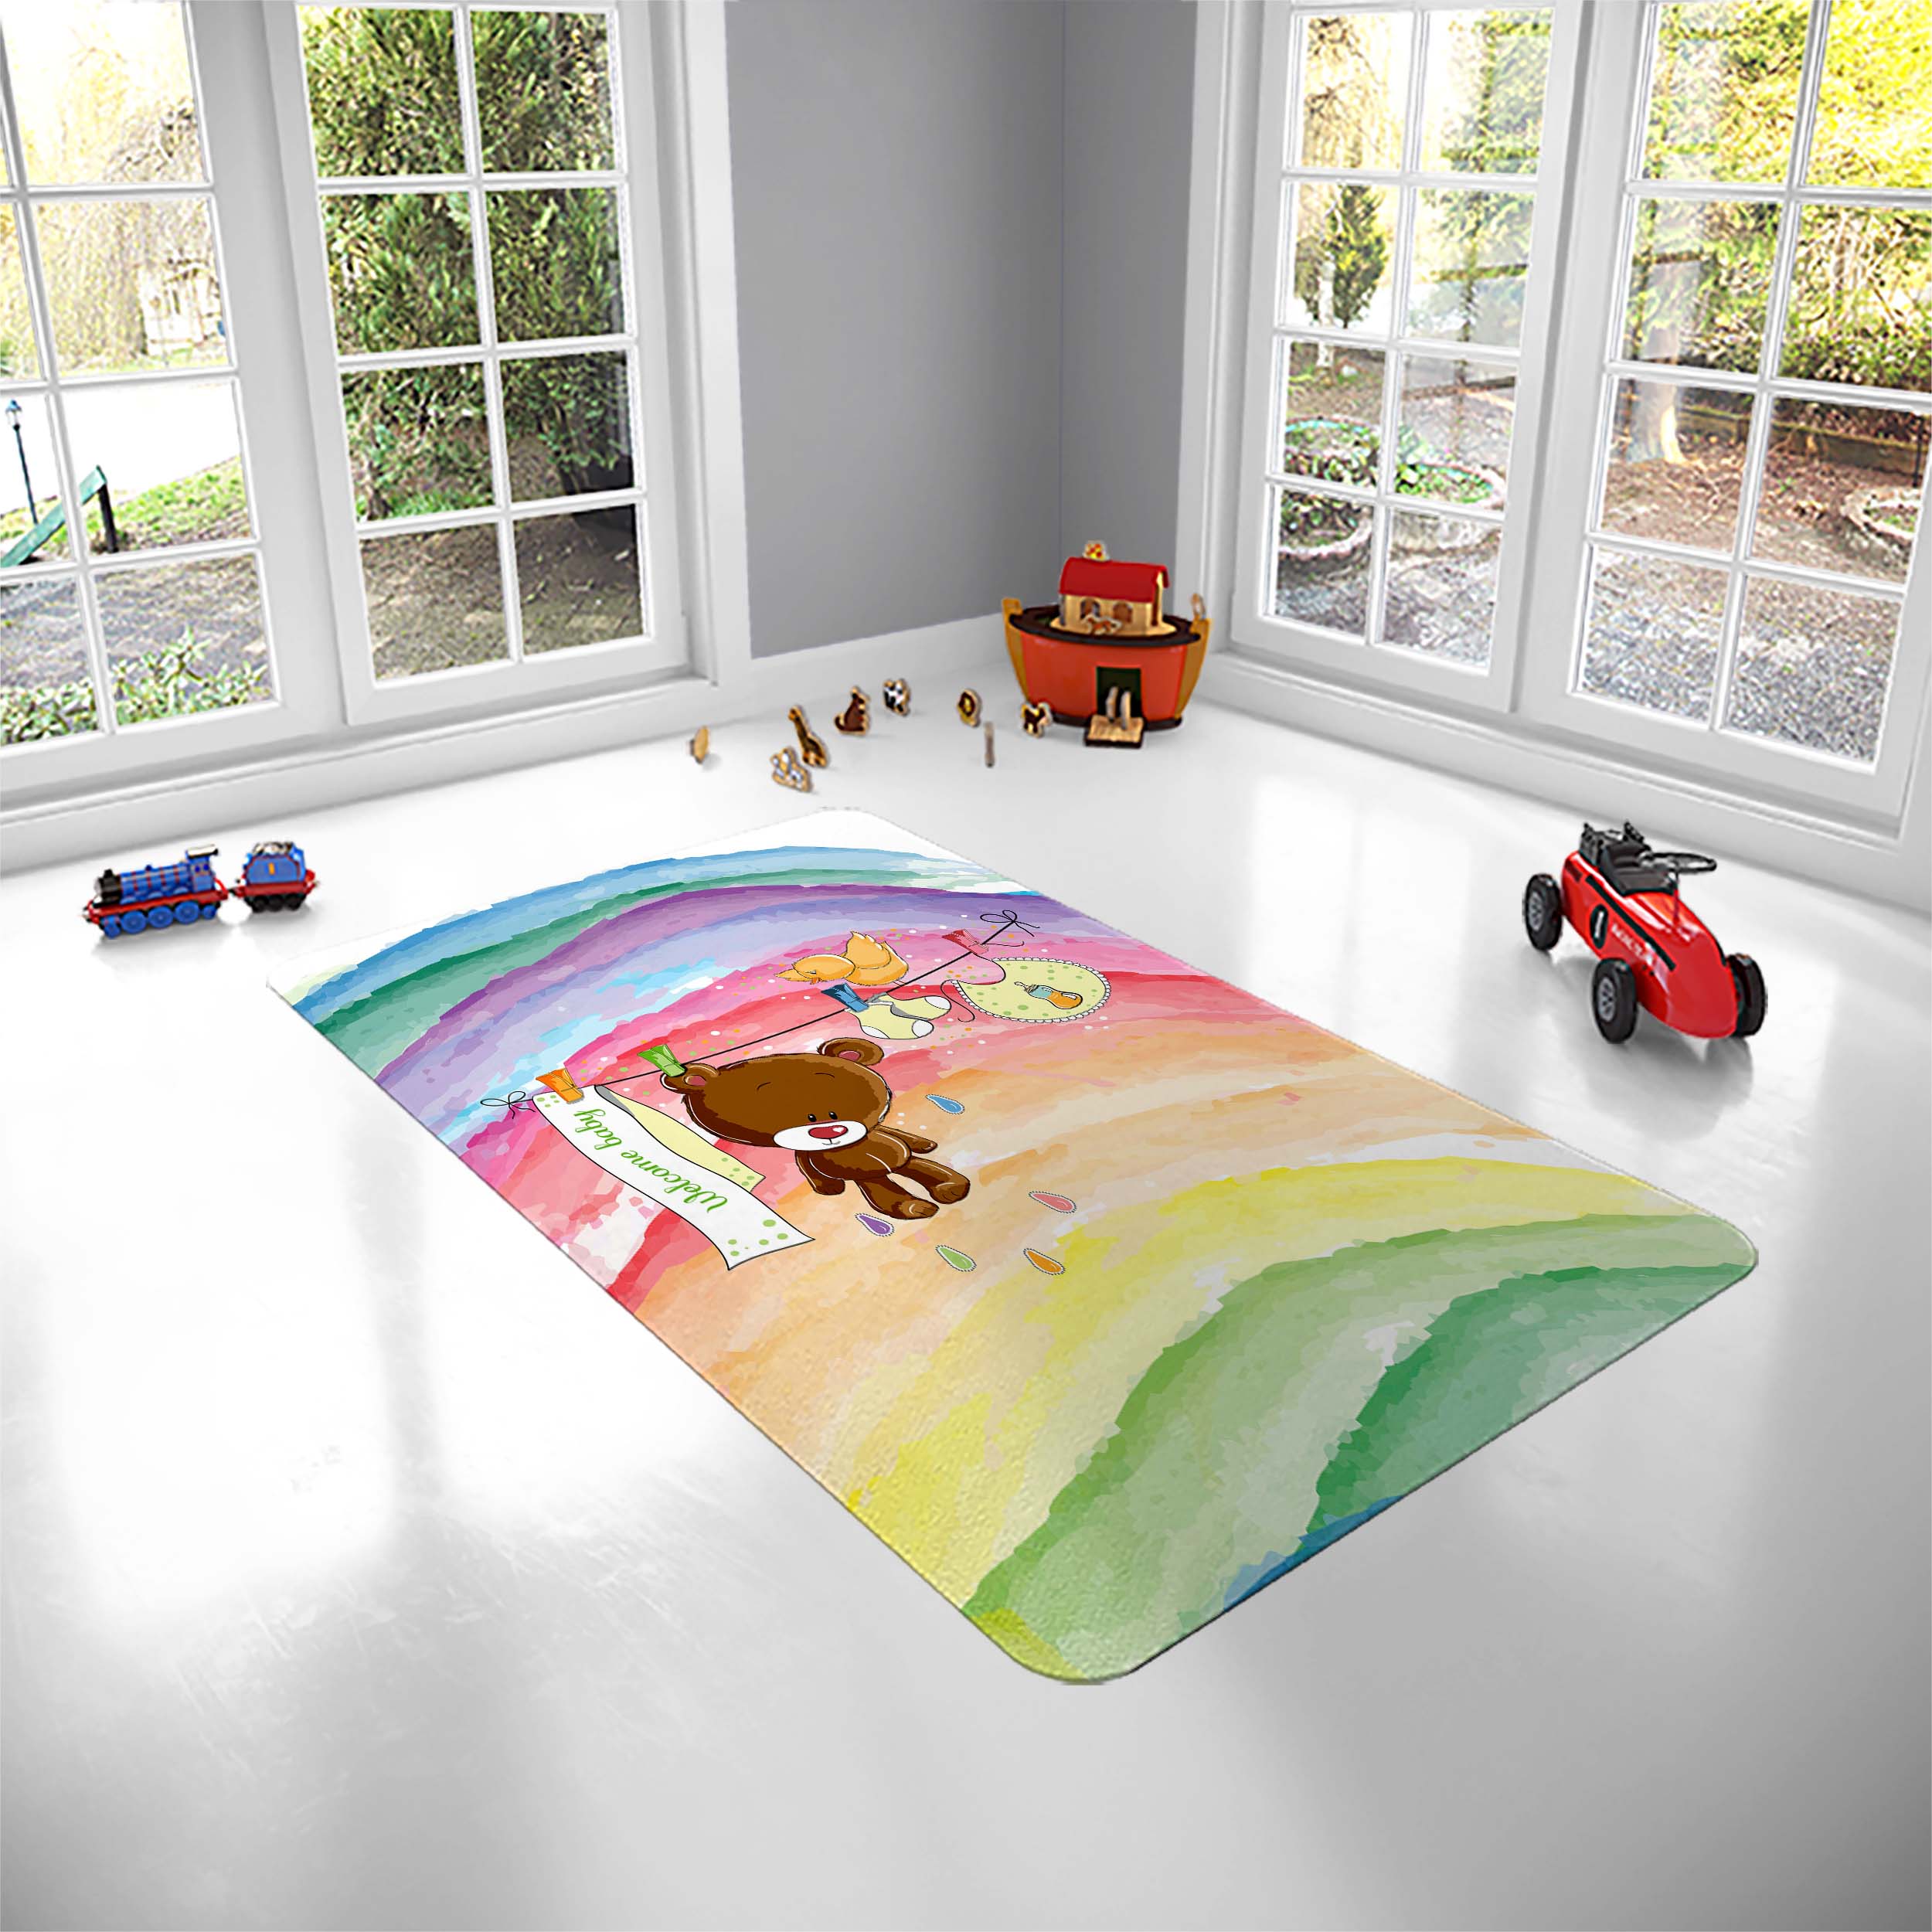 فرش پارچه ای مدل خرس